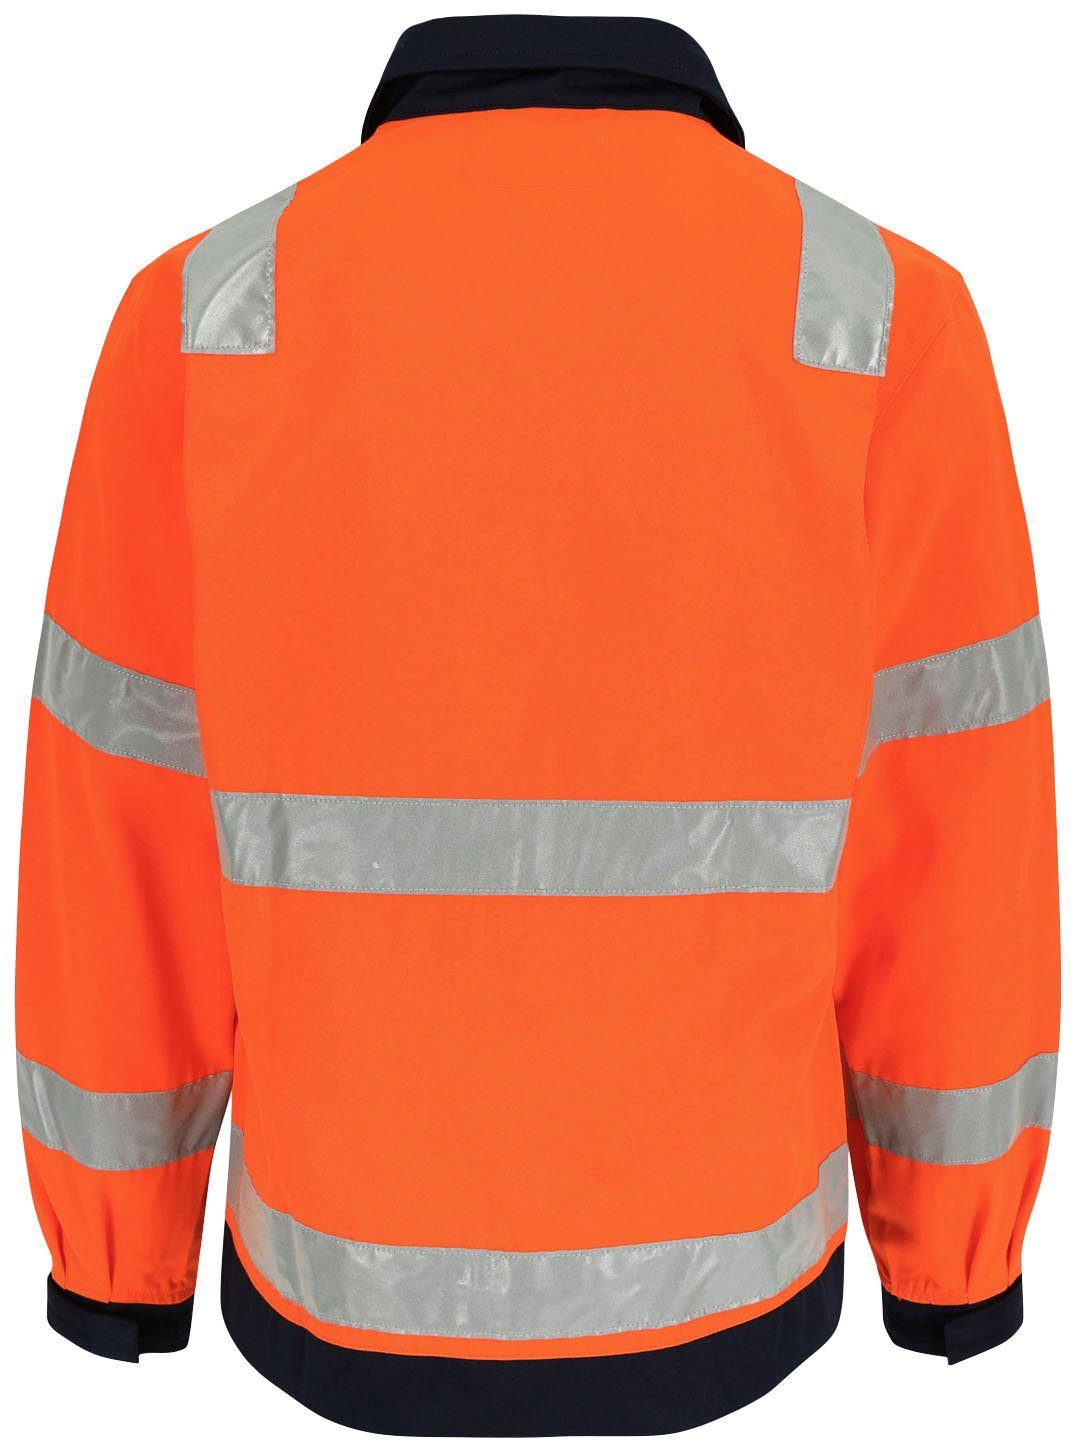 Hydros reflektierende Herock Hochwertig, 5cm Taschen, 5 Hochsichtbar Bänder Jacke orange Bündchen, Arbeitsjacke eintellbare